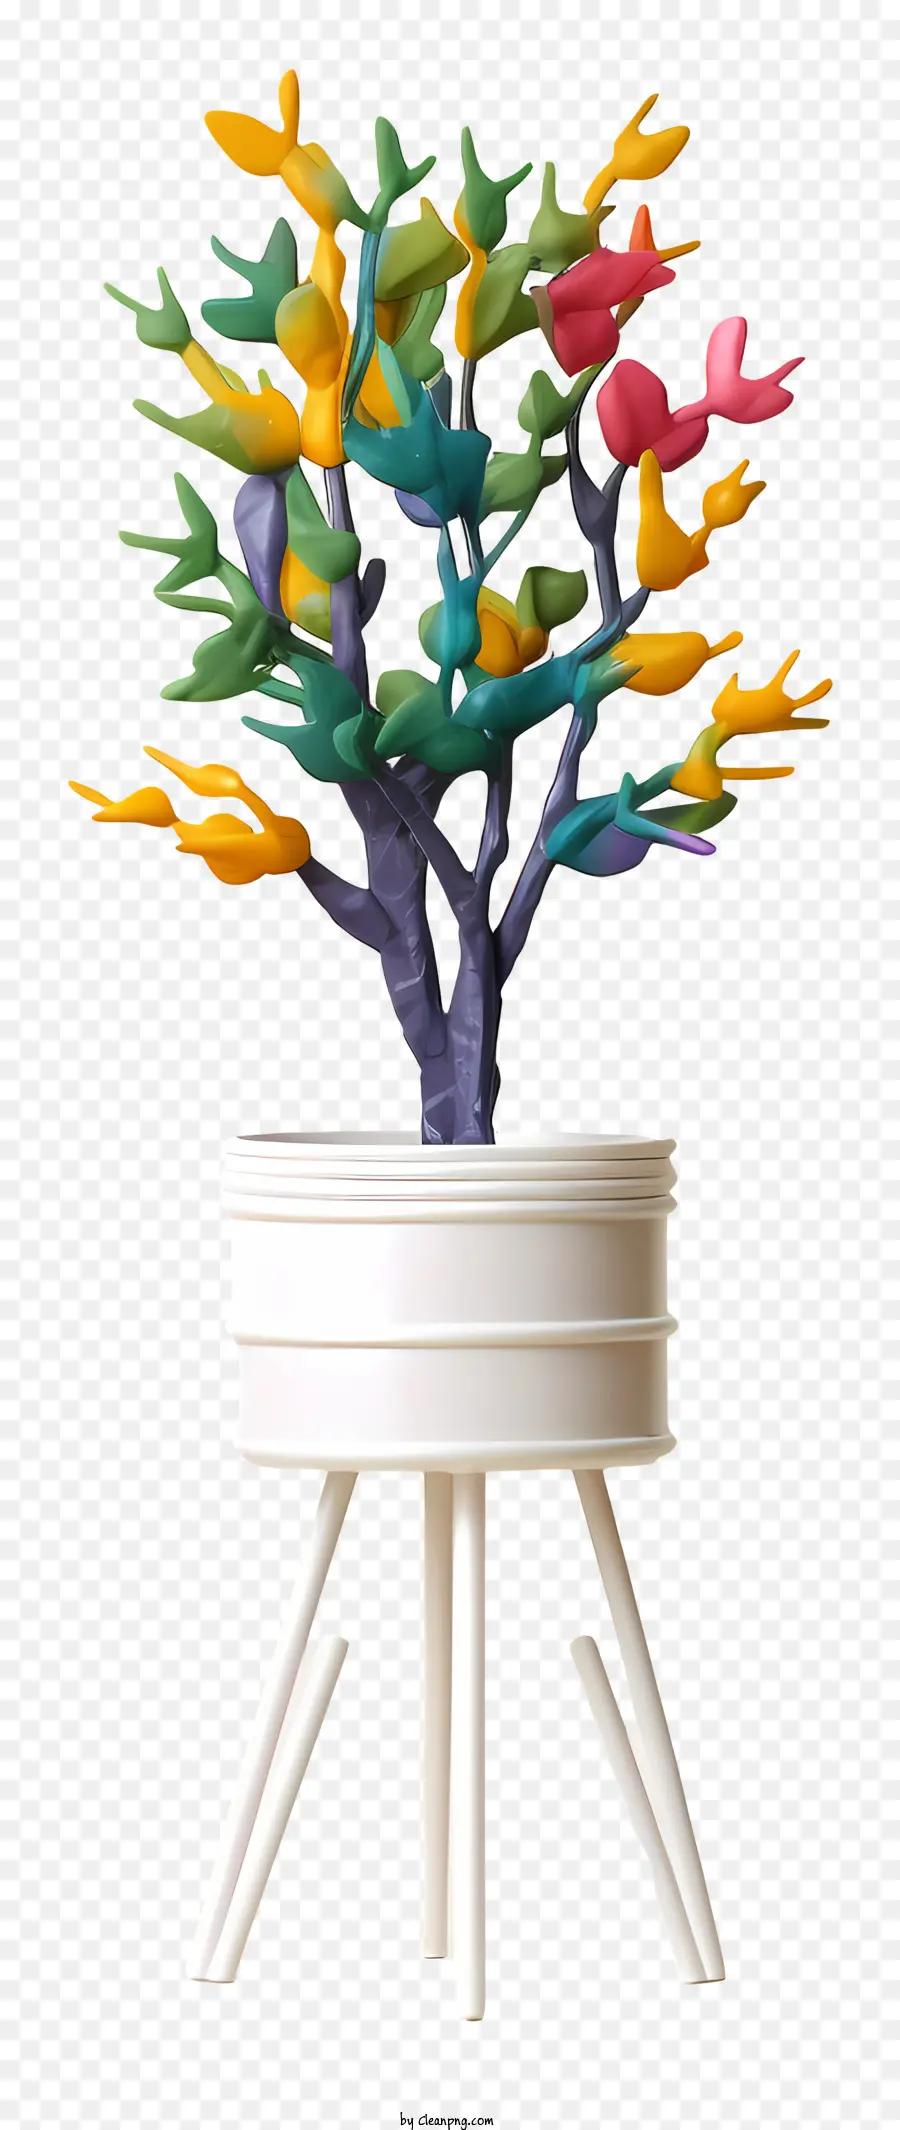 foglie colorate di alberi foglie galleggianti immagine del piedistallo bianco senza colore - Foglie galleggianti su piedistallo bianco a forma di albero